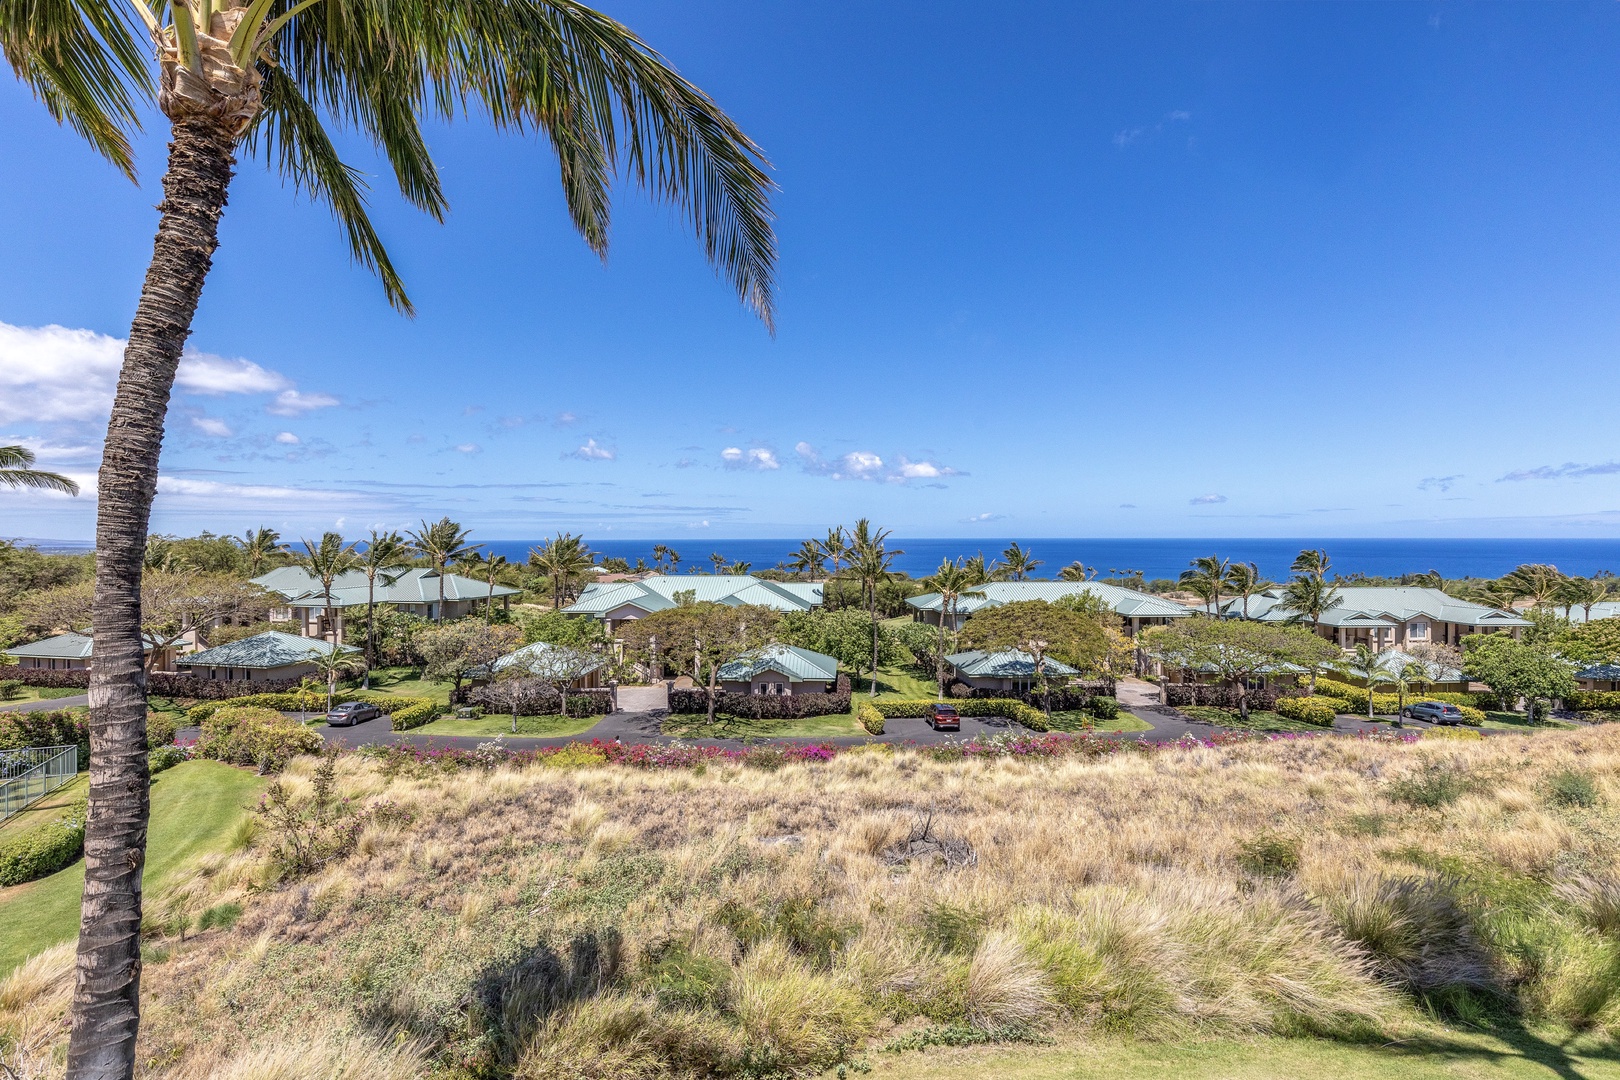 Kamuela Vacation Rentals, 2BD Kumulani (I-4) at Mauna Kea Resort - Gorgeous views from the lanai.